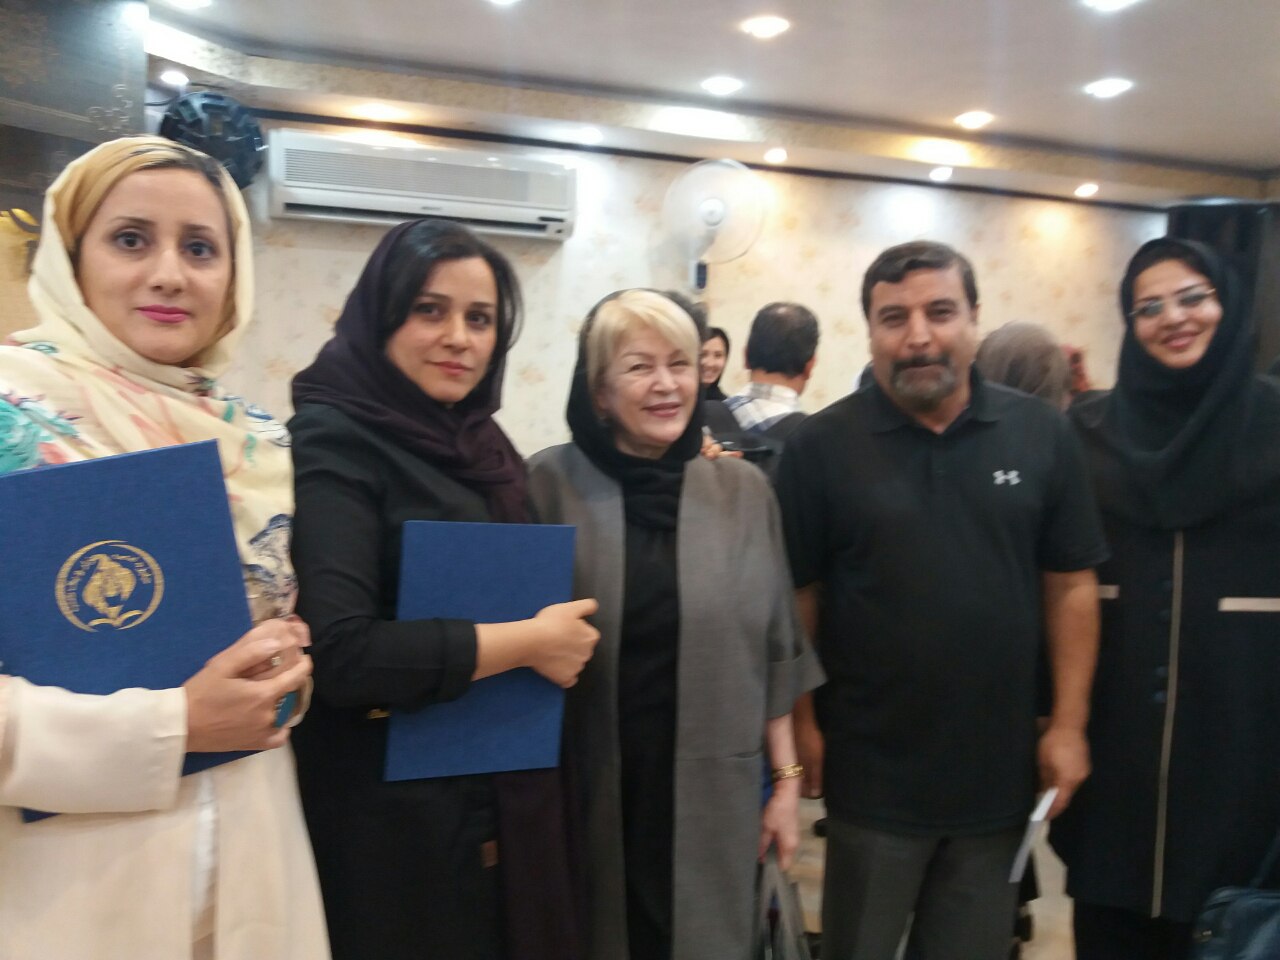 اختتامیه جشنواره «هزار و یک شب» با حضور اهالی فرهنگ و برگزیدگان افغانستانی و ایرانی٬ در تهران برگزار شد